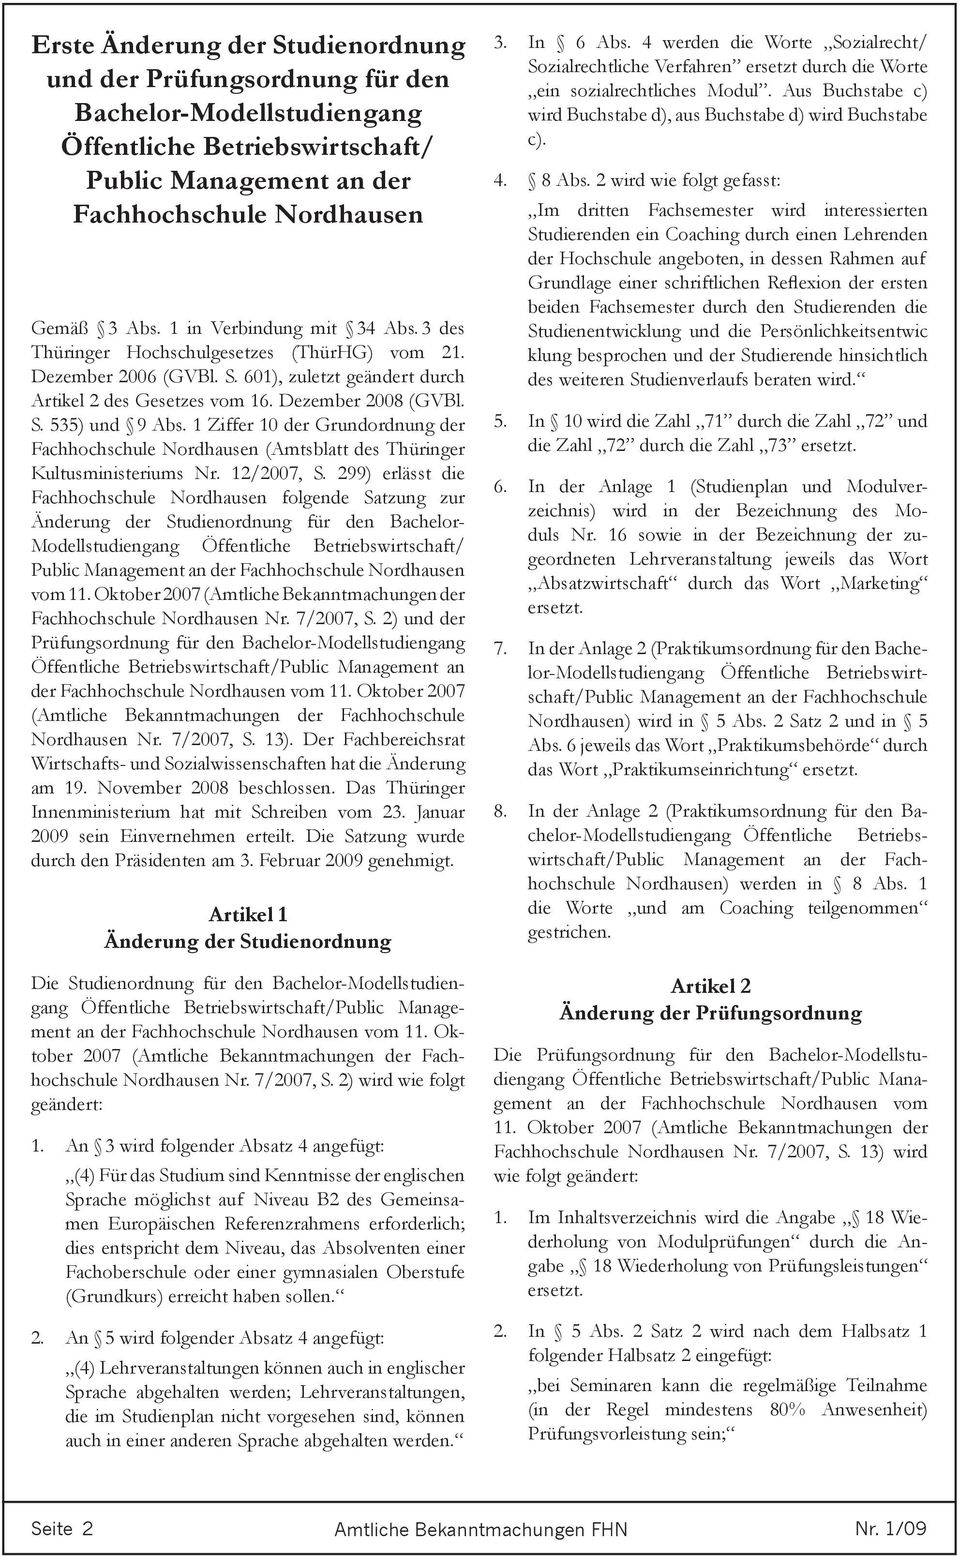 1 Ziffer 10 der Grundordnung der Fachhochschule (Amtsblatt des Thüringer Kultusministeriums Nr. 12/2007, S.